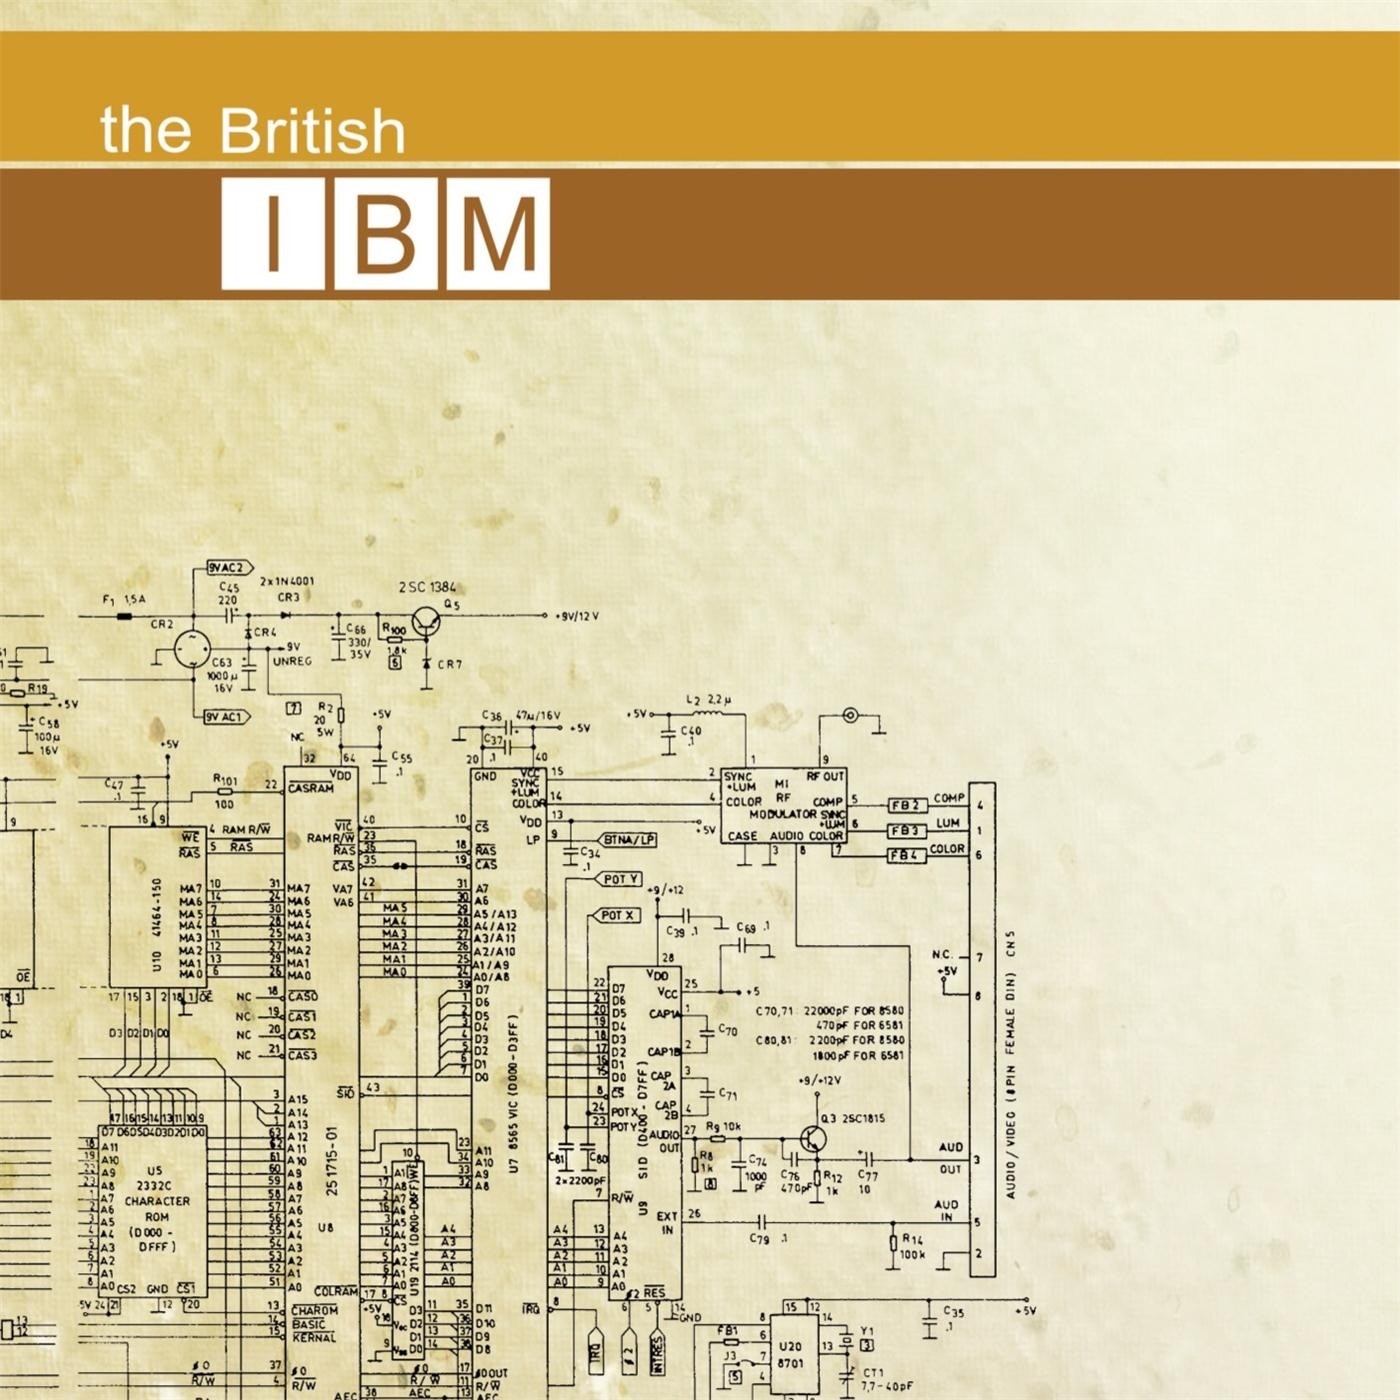 The British IBM